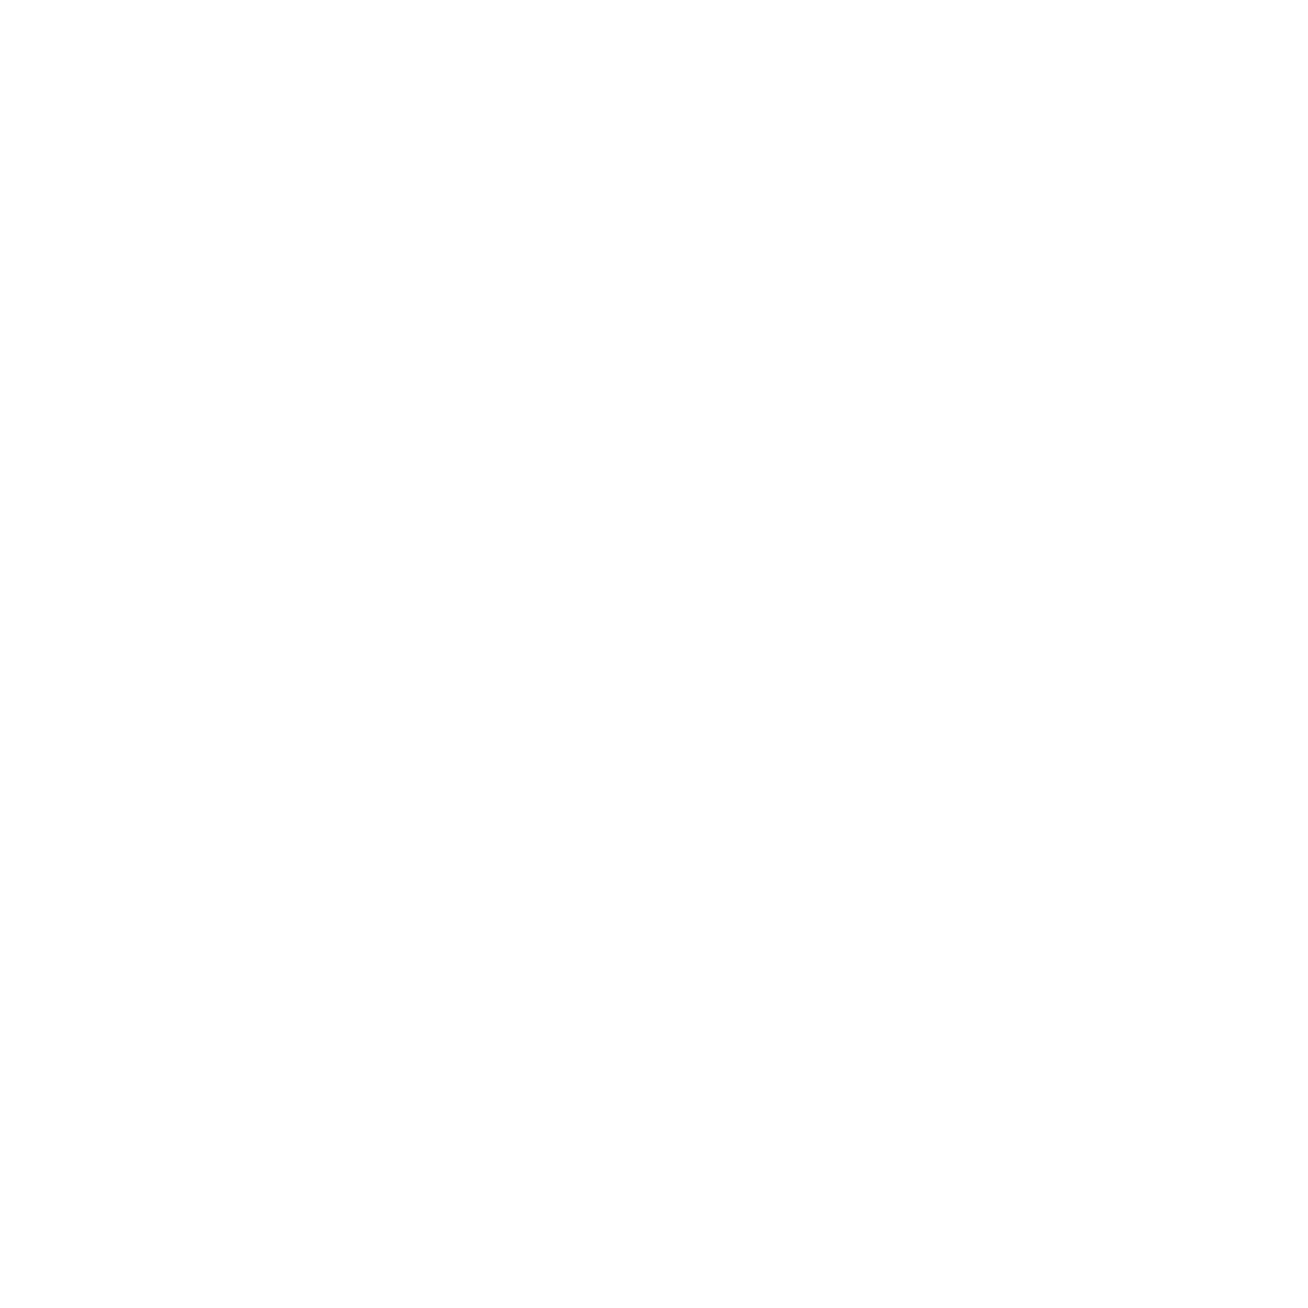 Abramo - Production de produit frais 